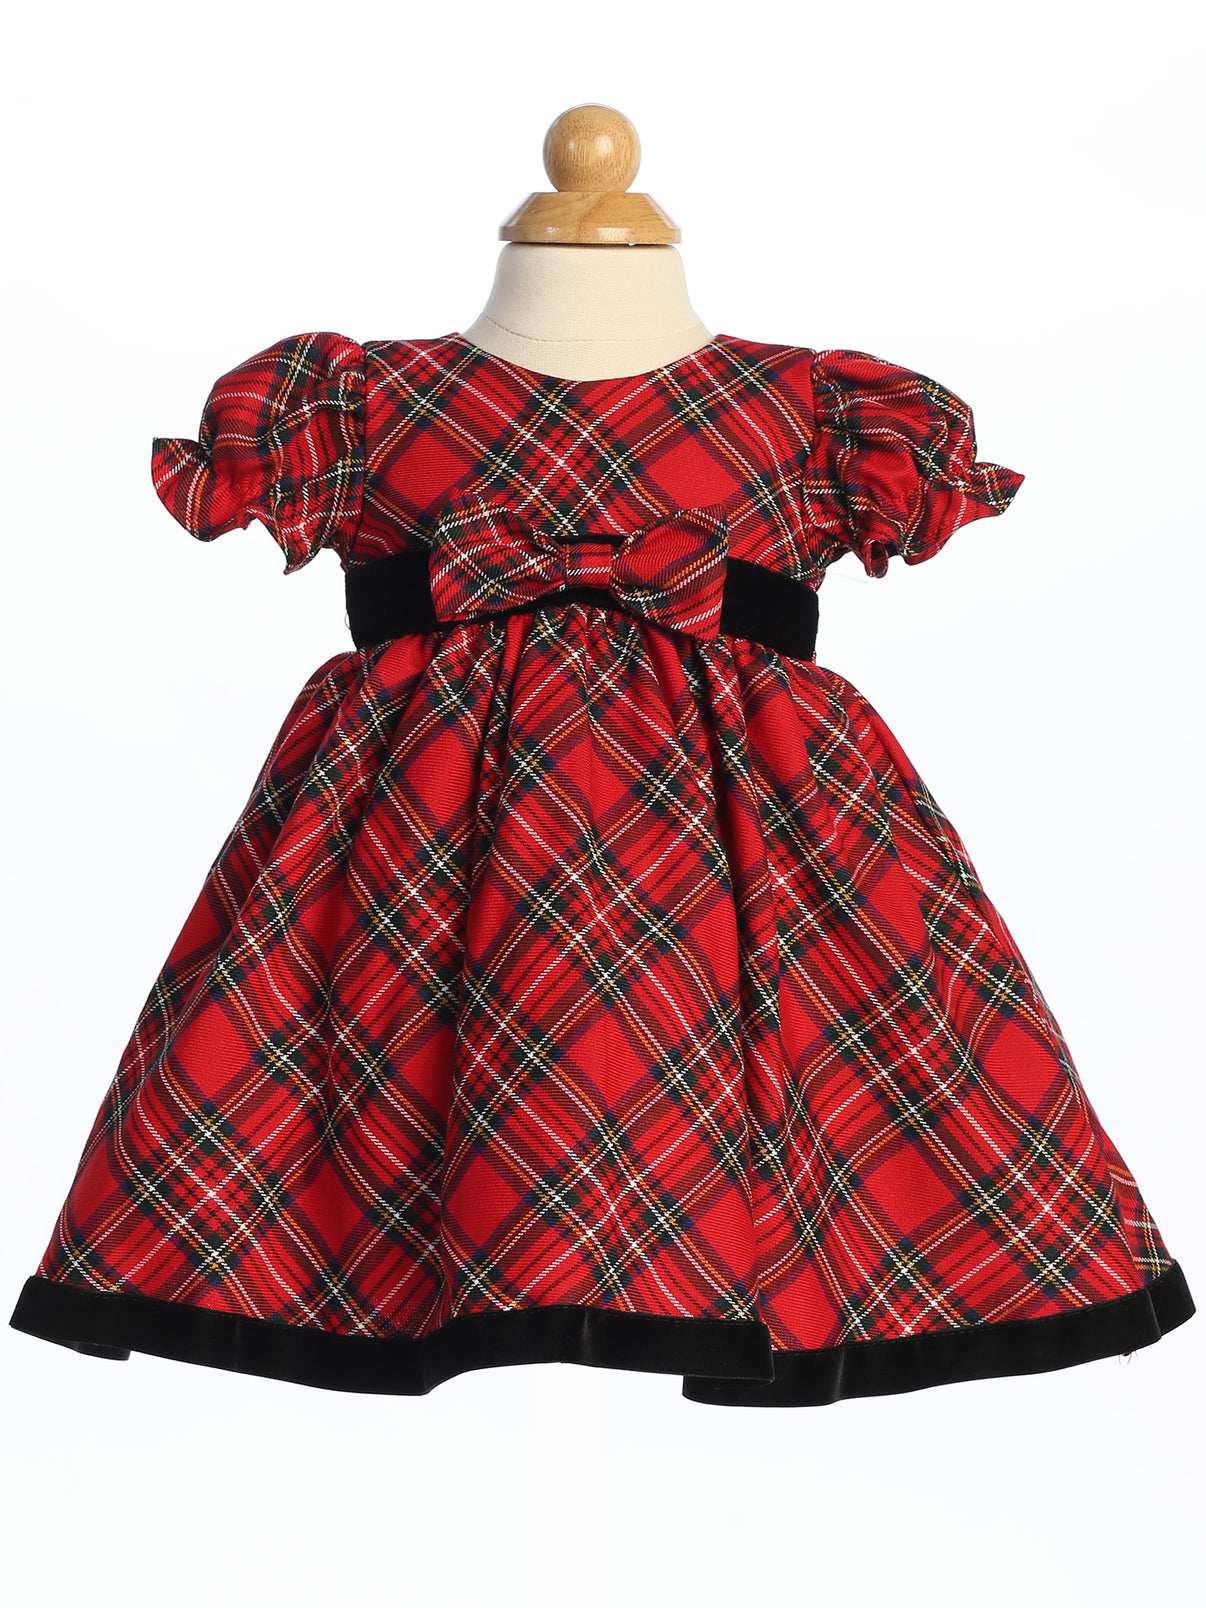 Girls Red Plaid Holiday Dress with Velvet Trim LT-C814R – Mollys Hanger